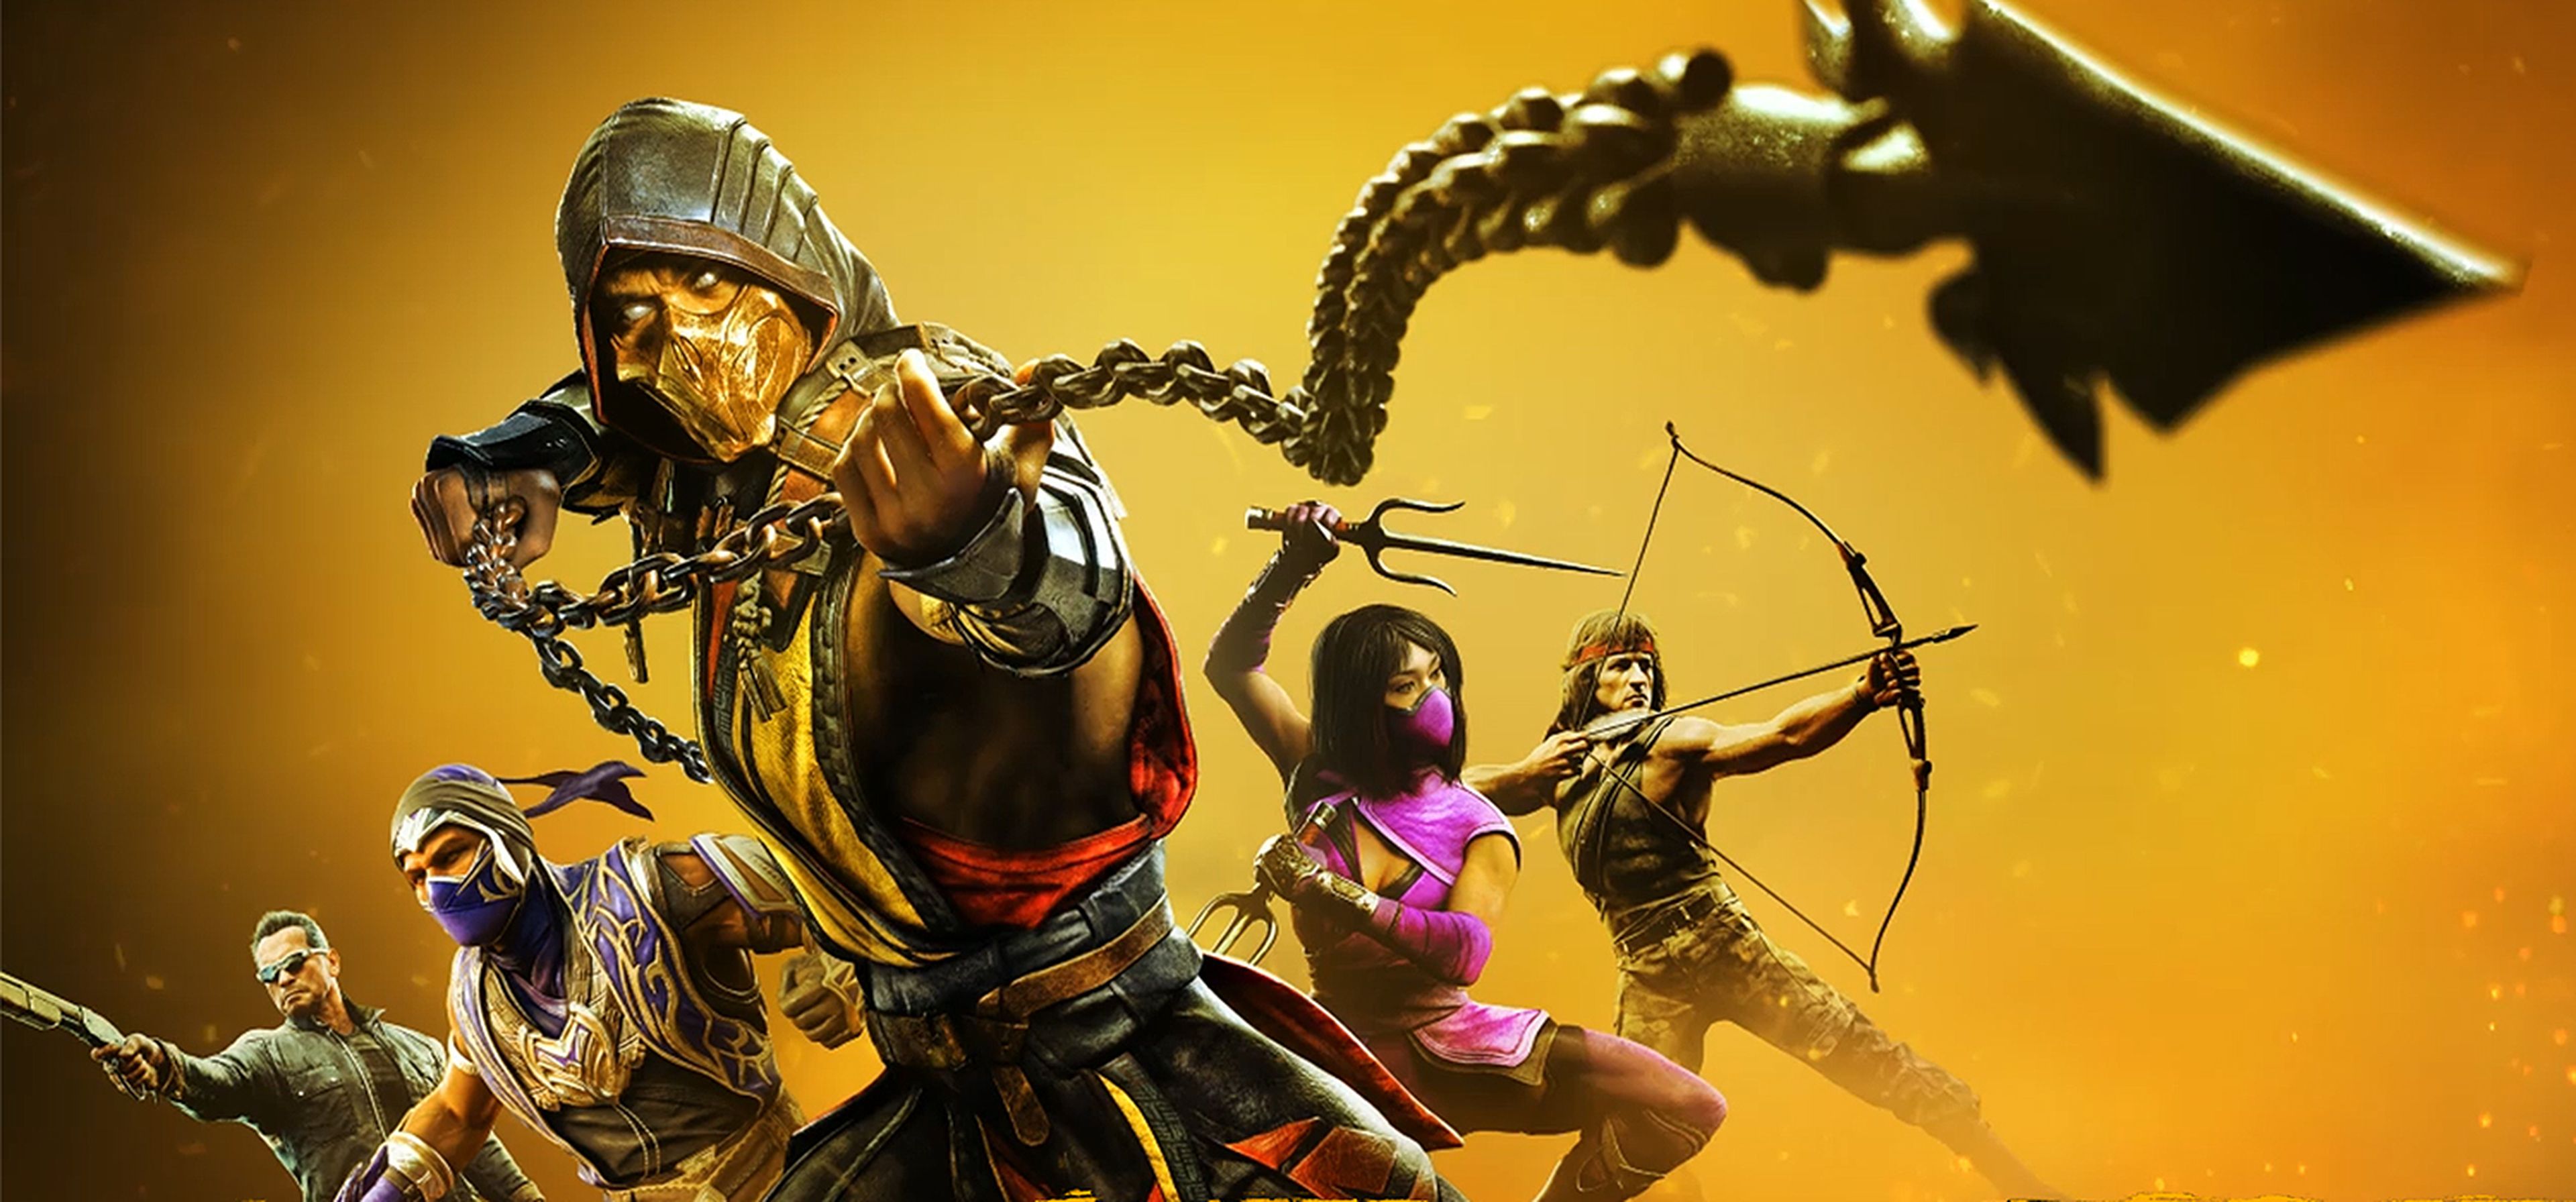 Análisis de Mortal Kombat 11: Aftermath, una expansión con muchos